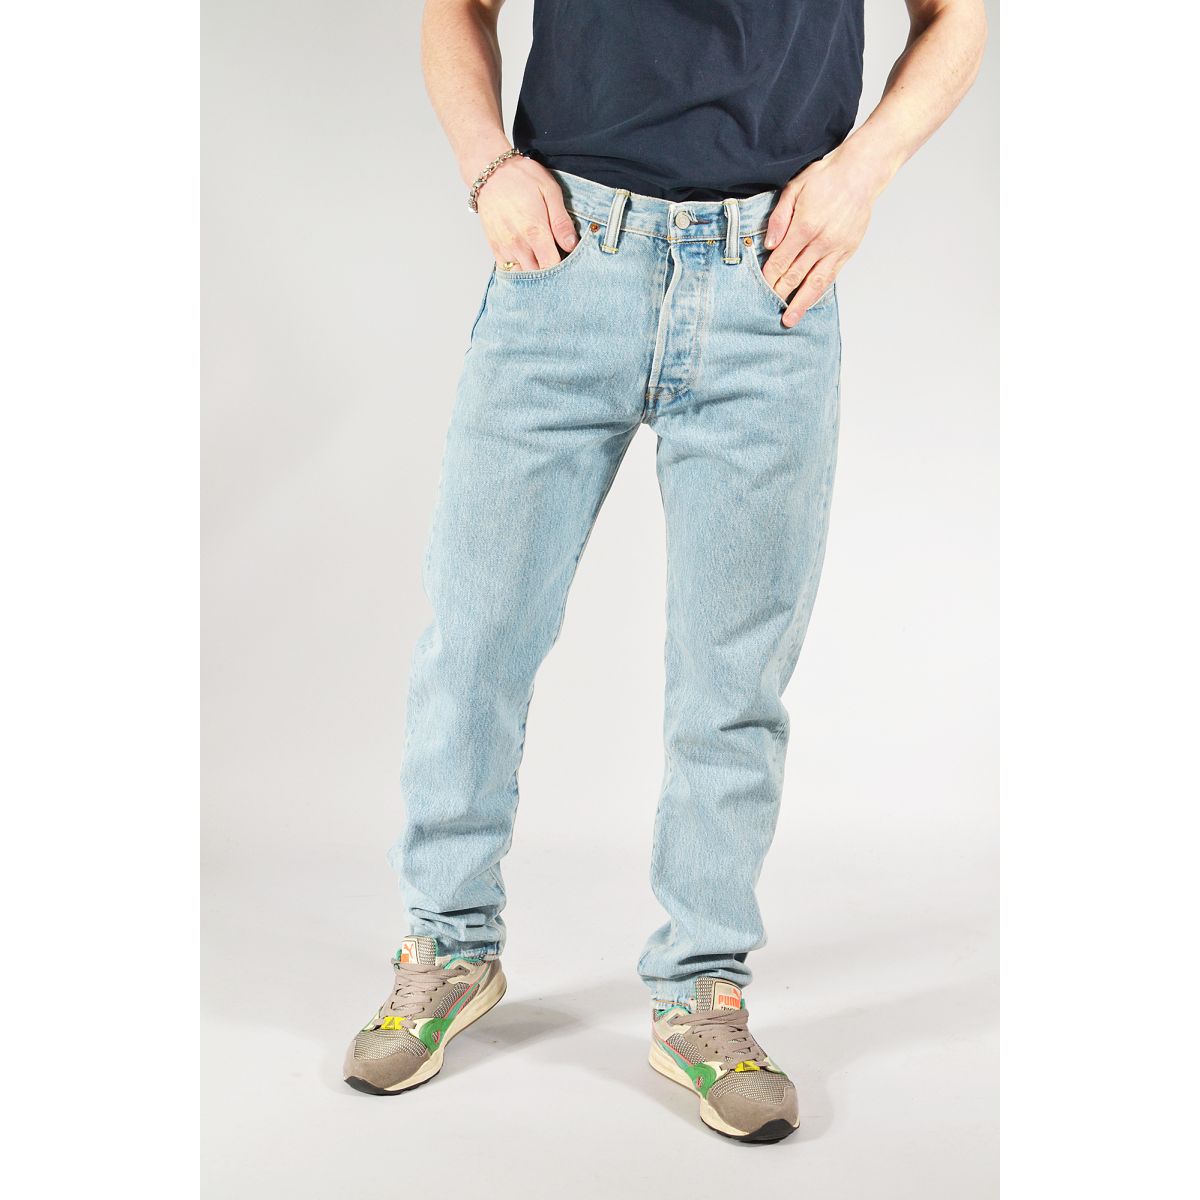 Descubrir 80+ imagen levi's men's 501 tapered fit jeans - Thptnganamst ...